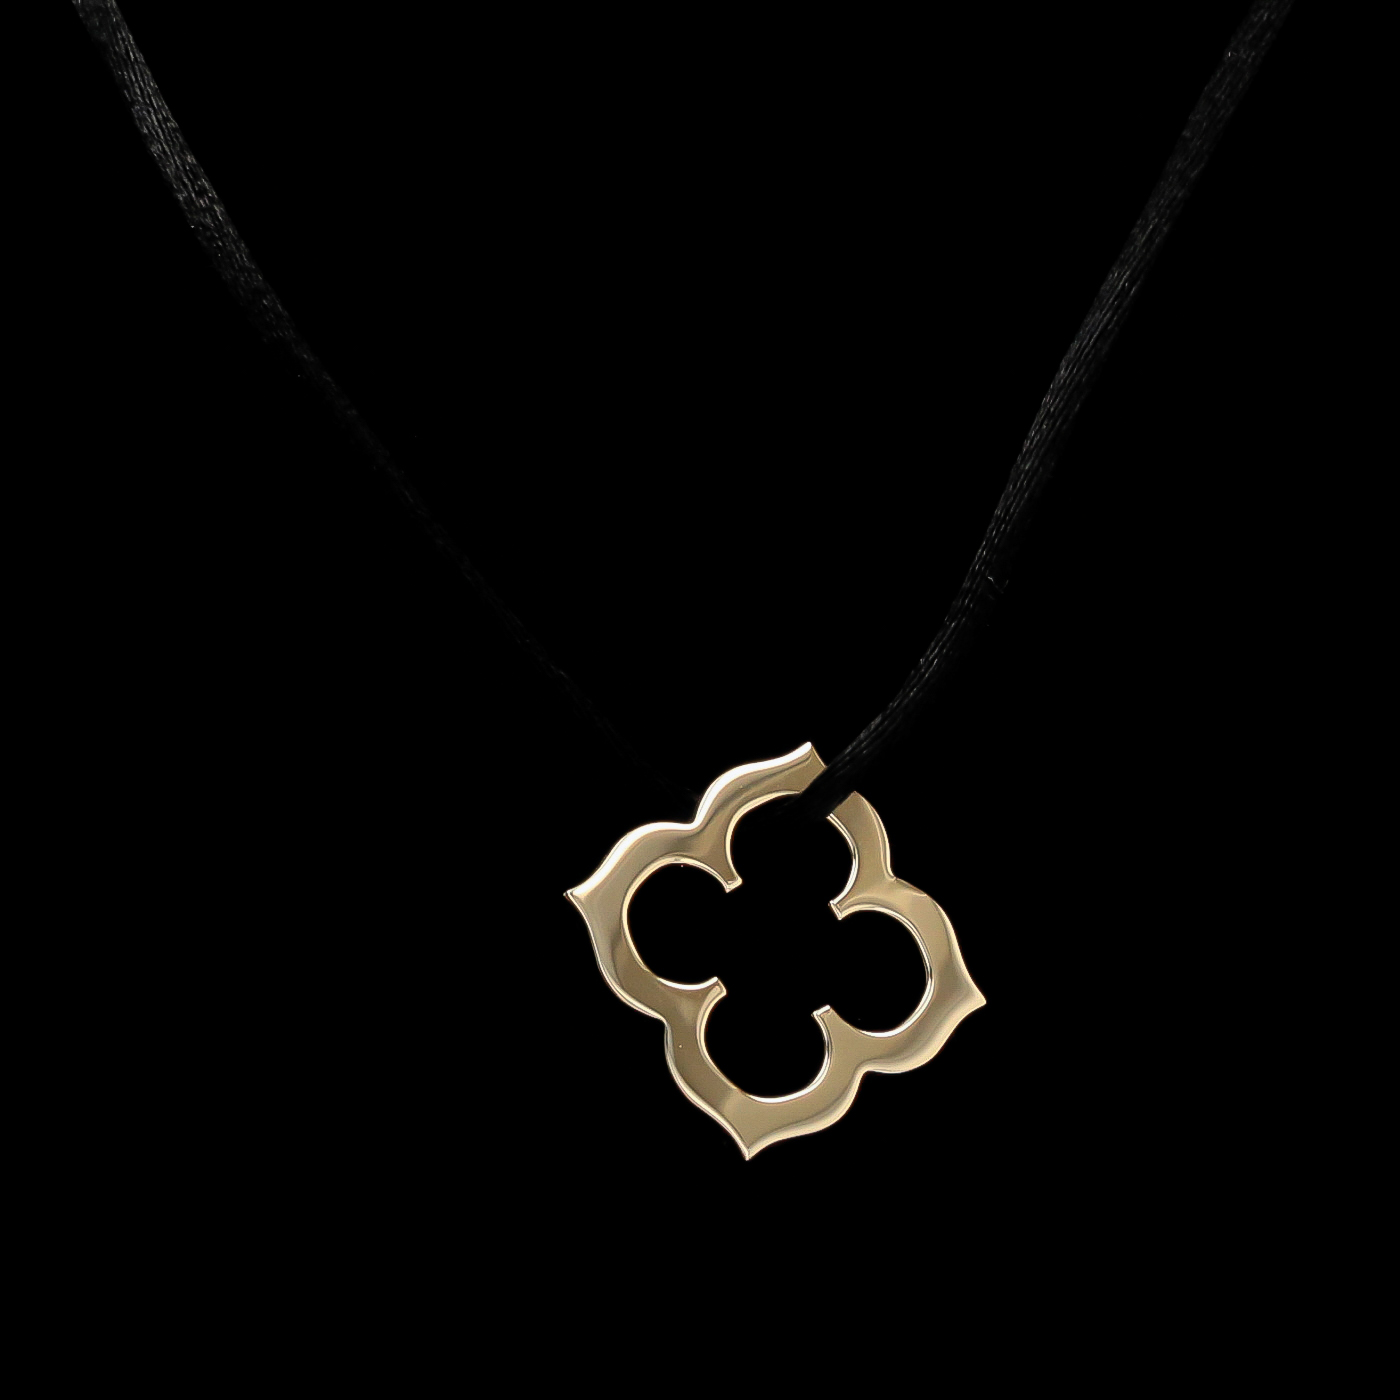 Pendant necklace, Necklace, Flower pendant necklace